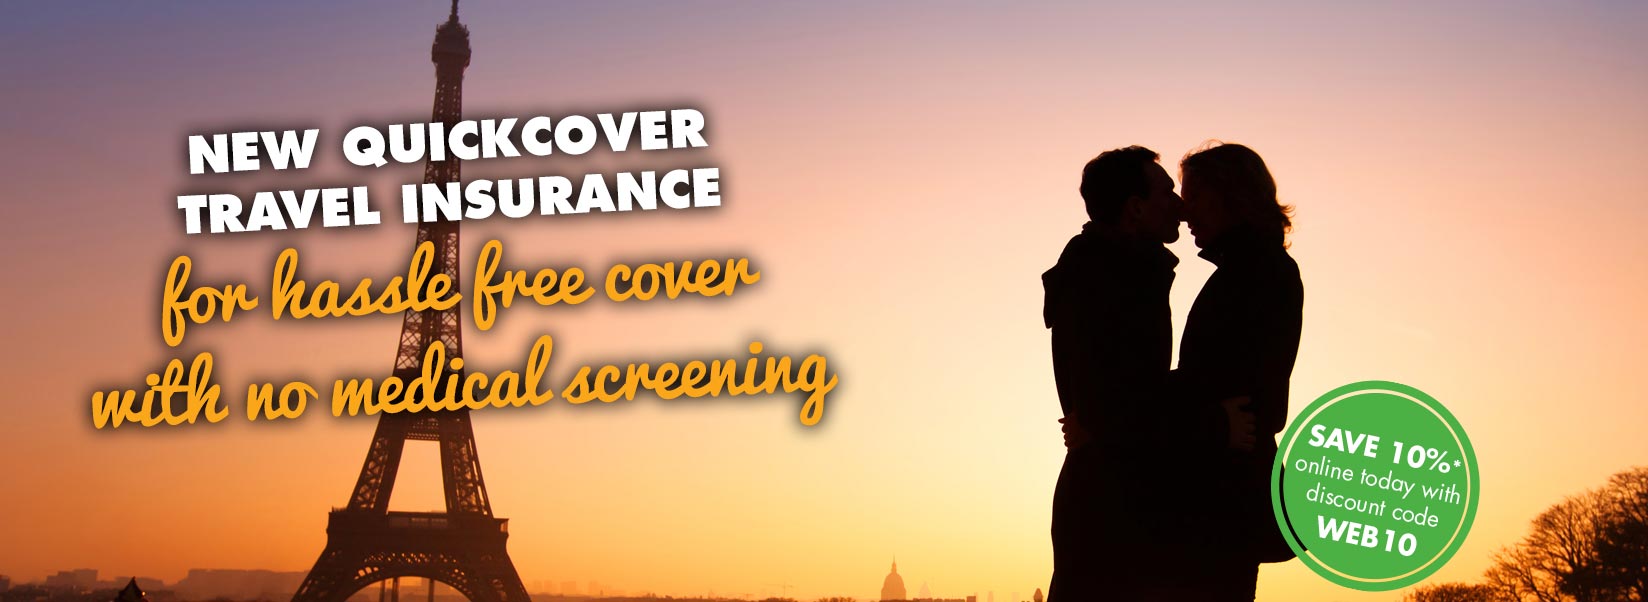 Travel Insurance for the Over 50s Avanti Travel Insurance